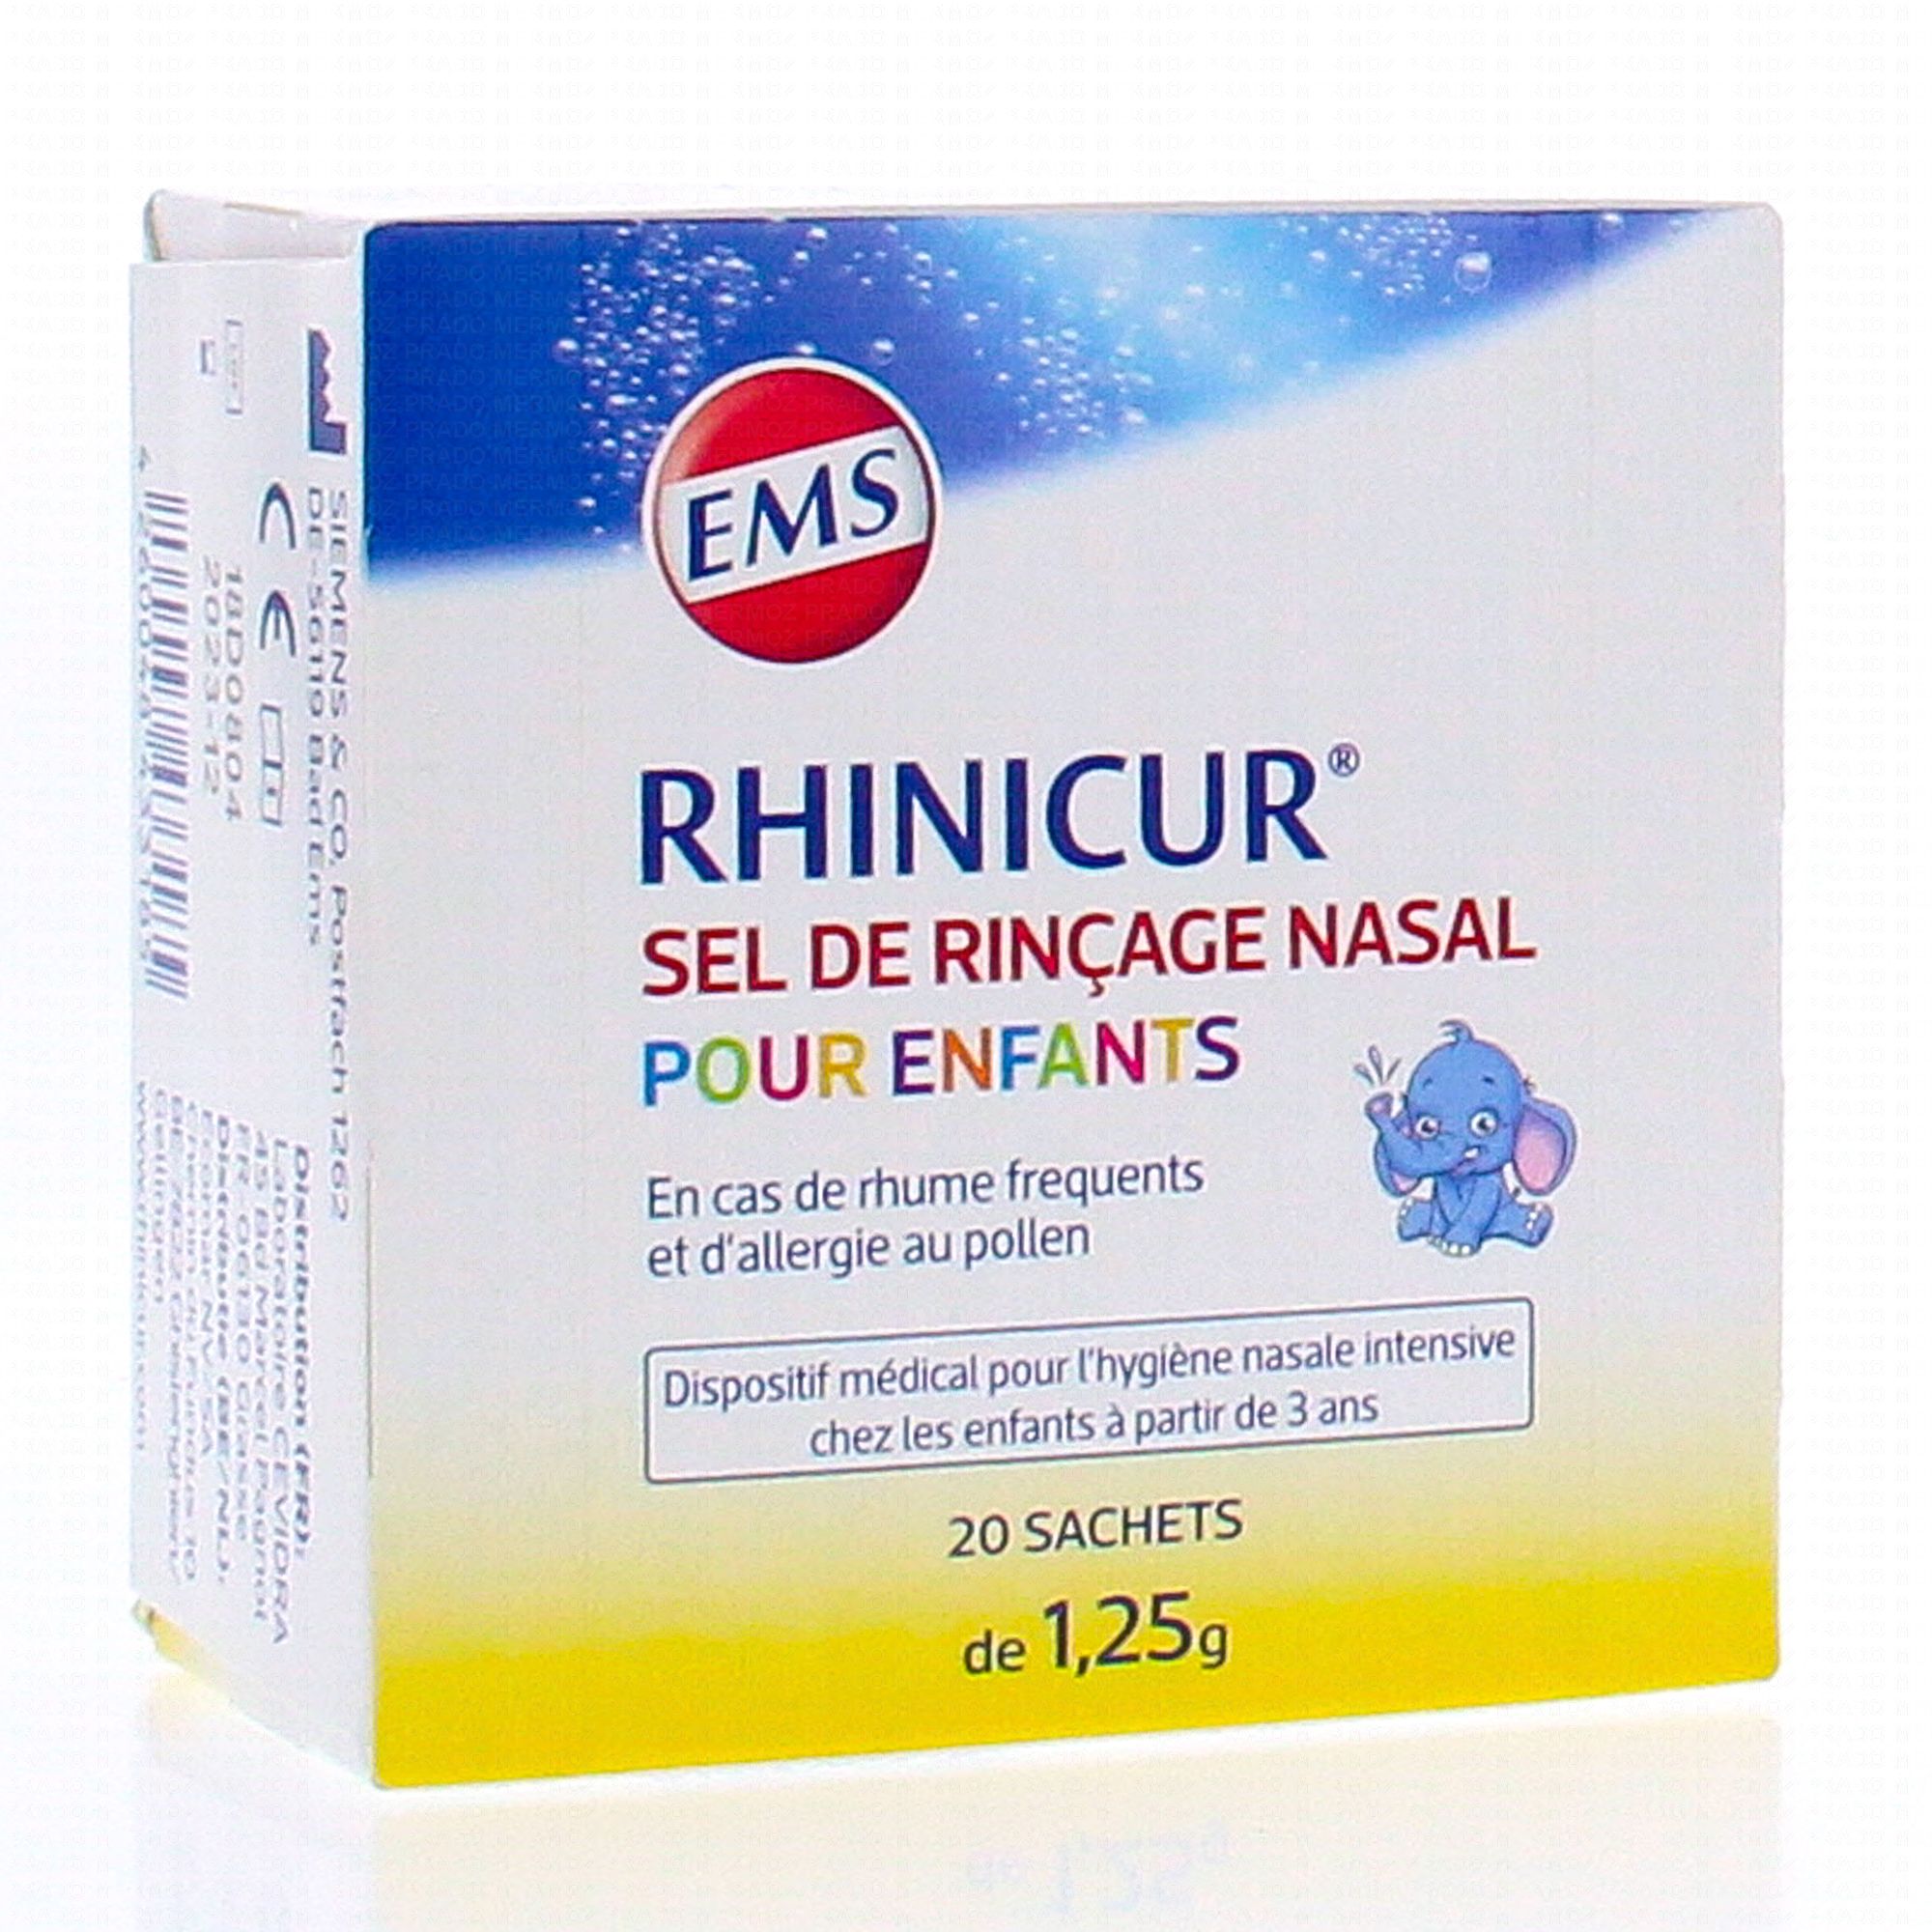 Acheter Rhinicur sel de rincage Sachets 20x2,5g ? Maintenant pour € 8.79  chez Viata